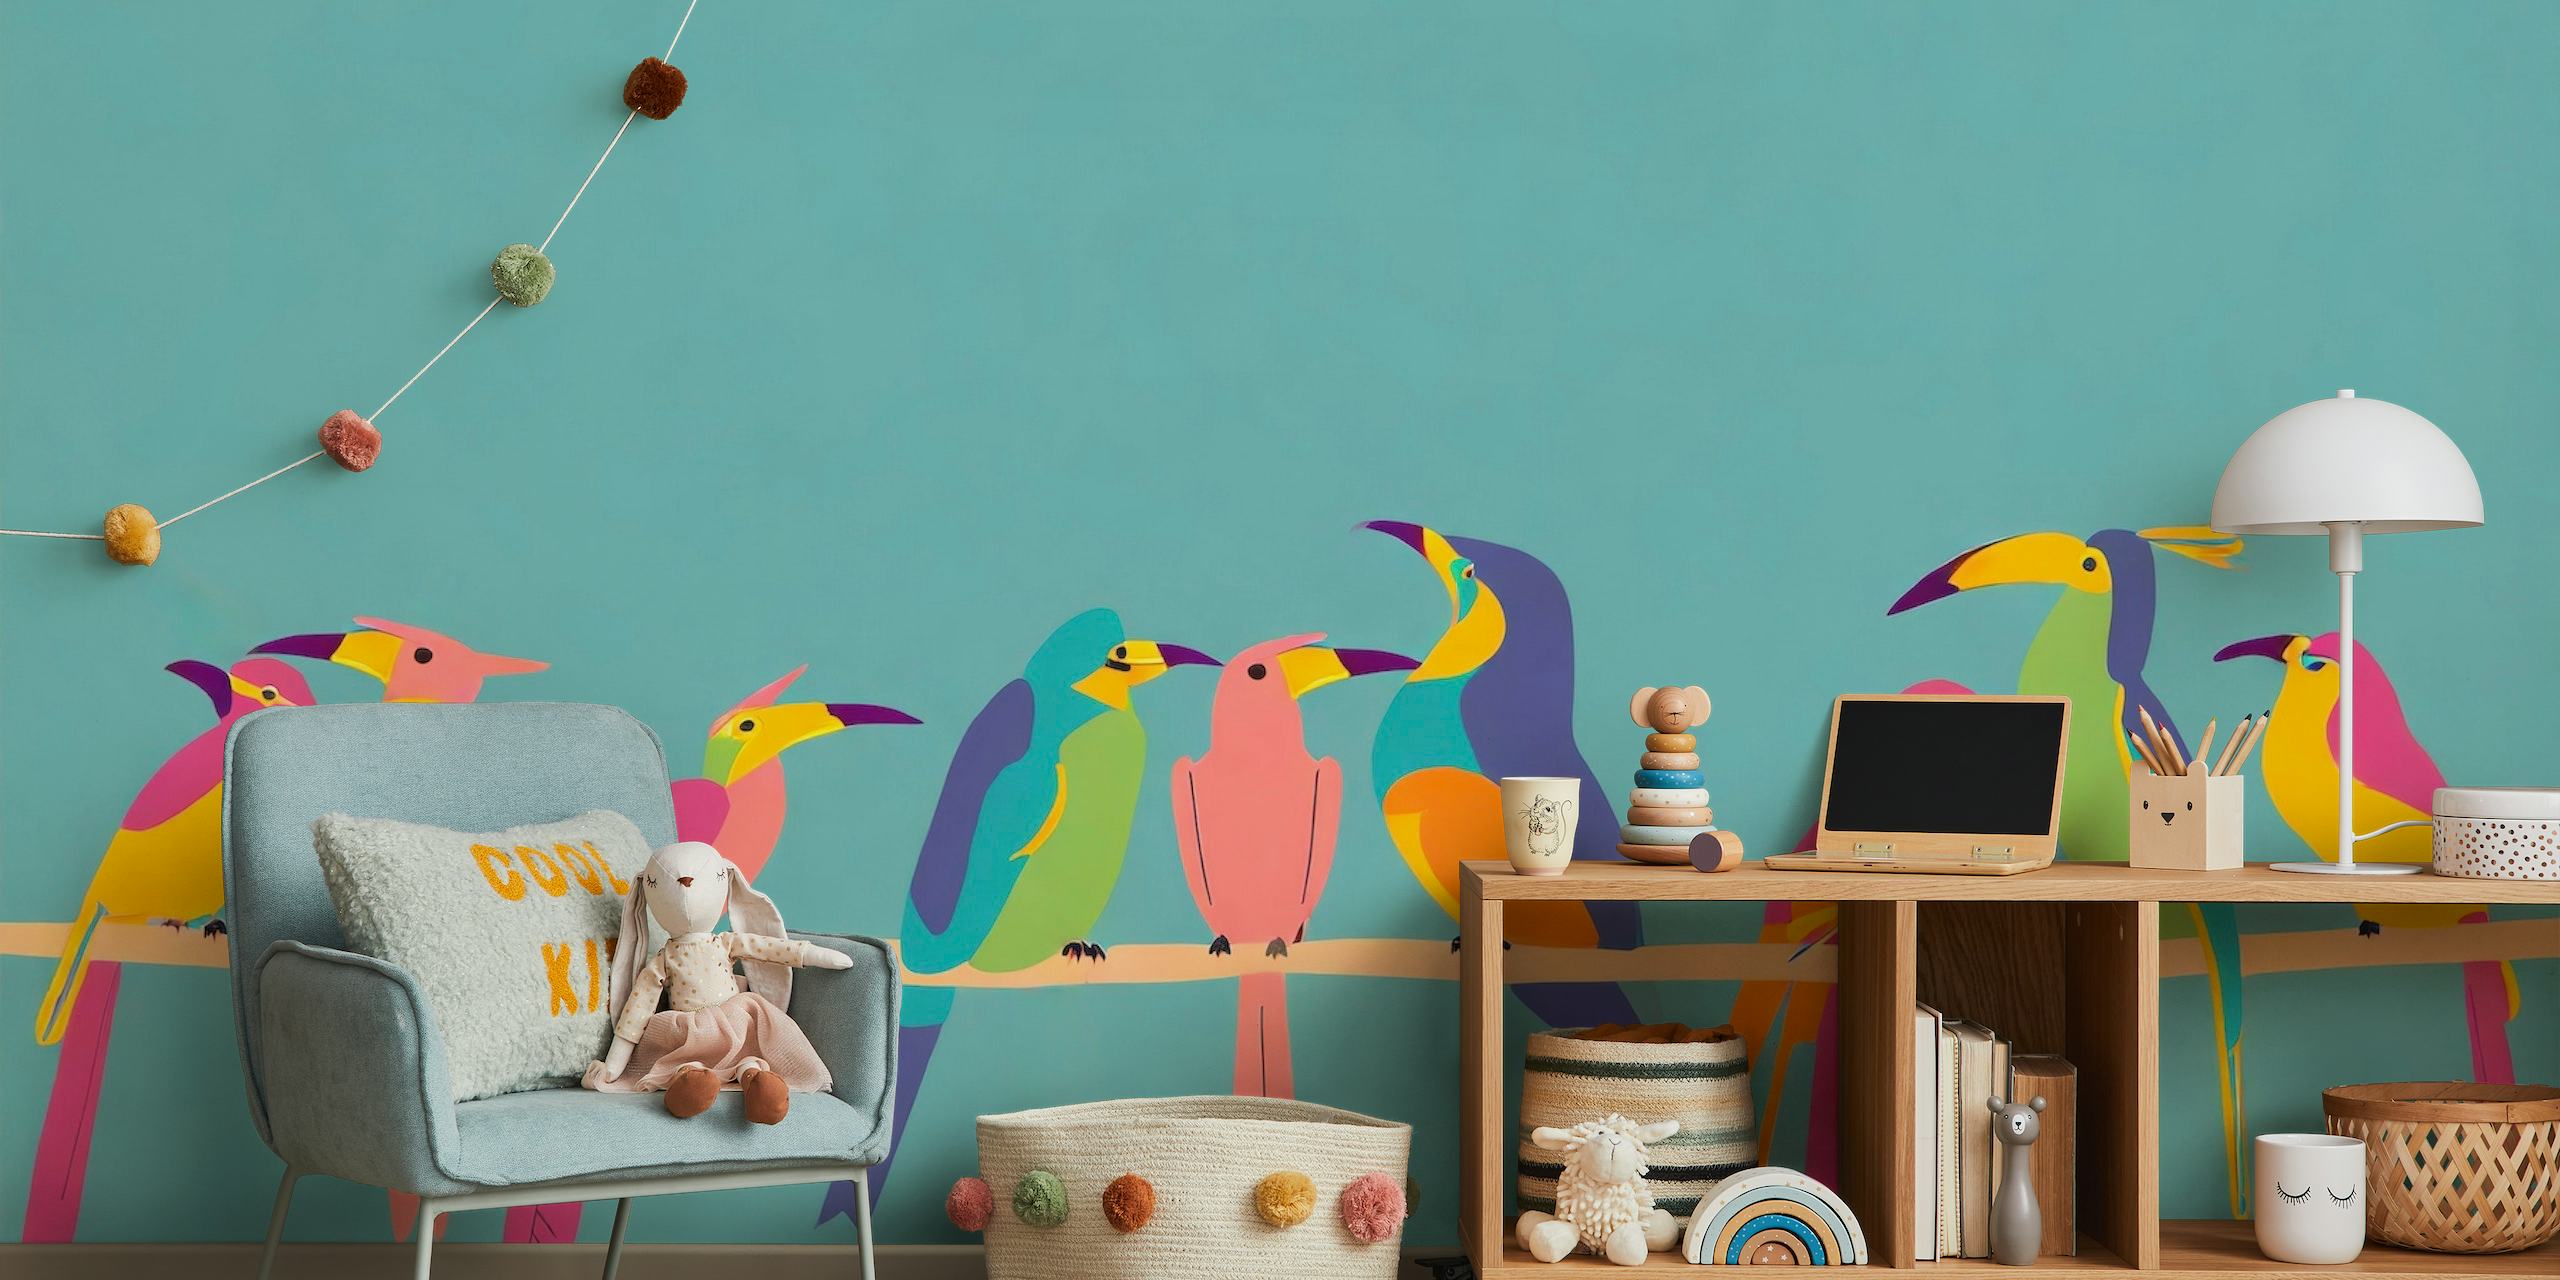 Illustration stilisierter bunter Vögel auf einem Ast vor einem blaugrünen Hintergrund